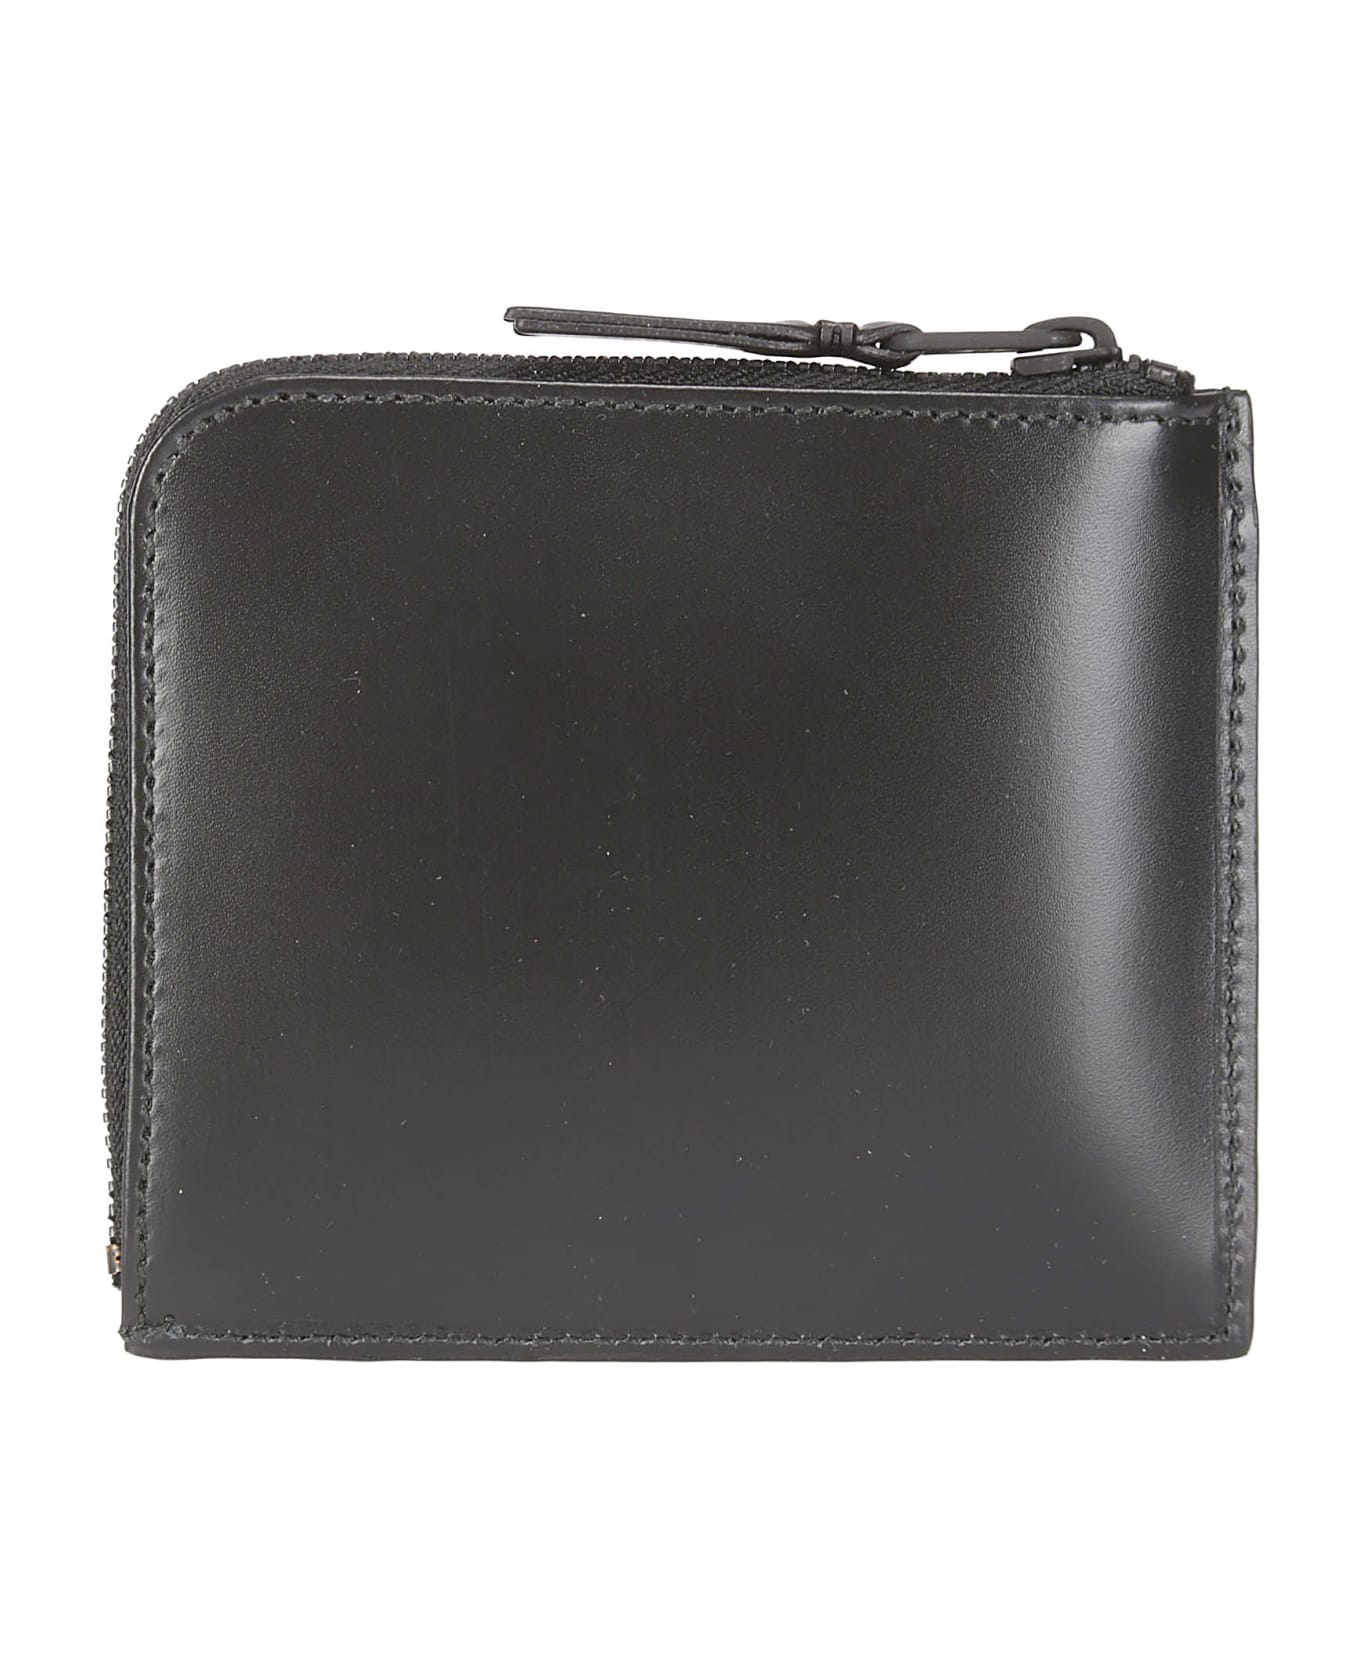 Comme des Garçons Wallet Very Black Leather Line - BLACK